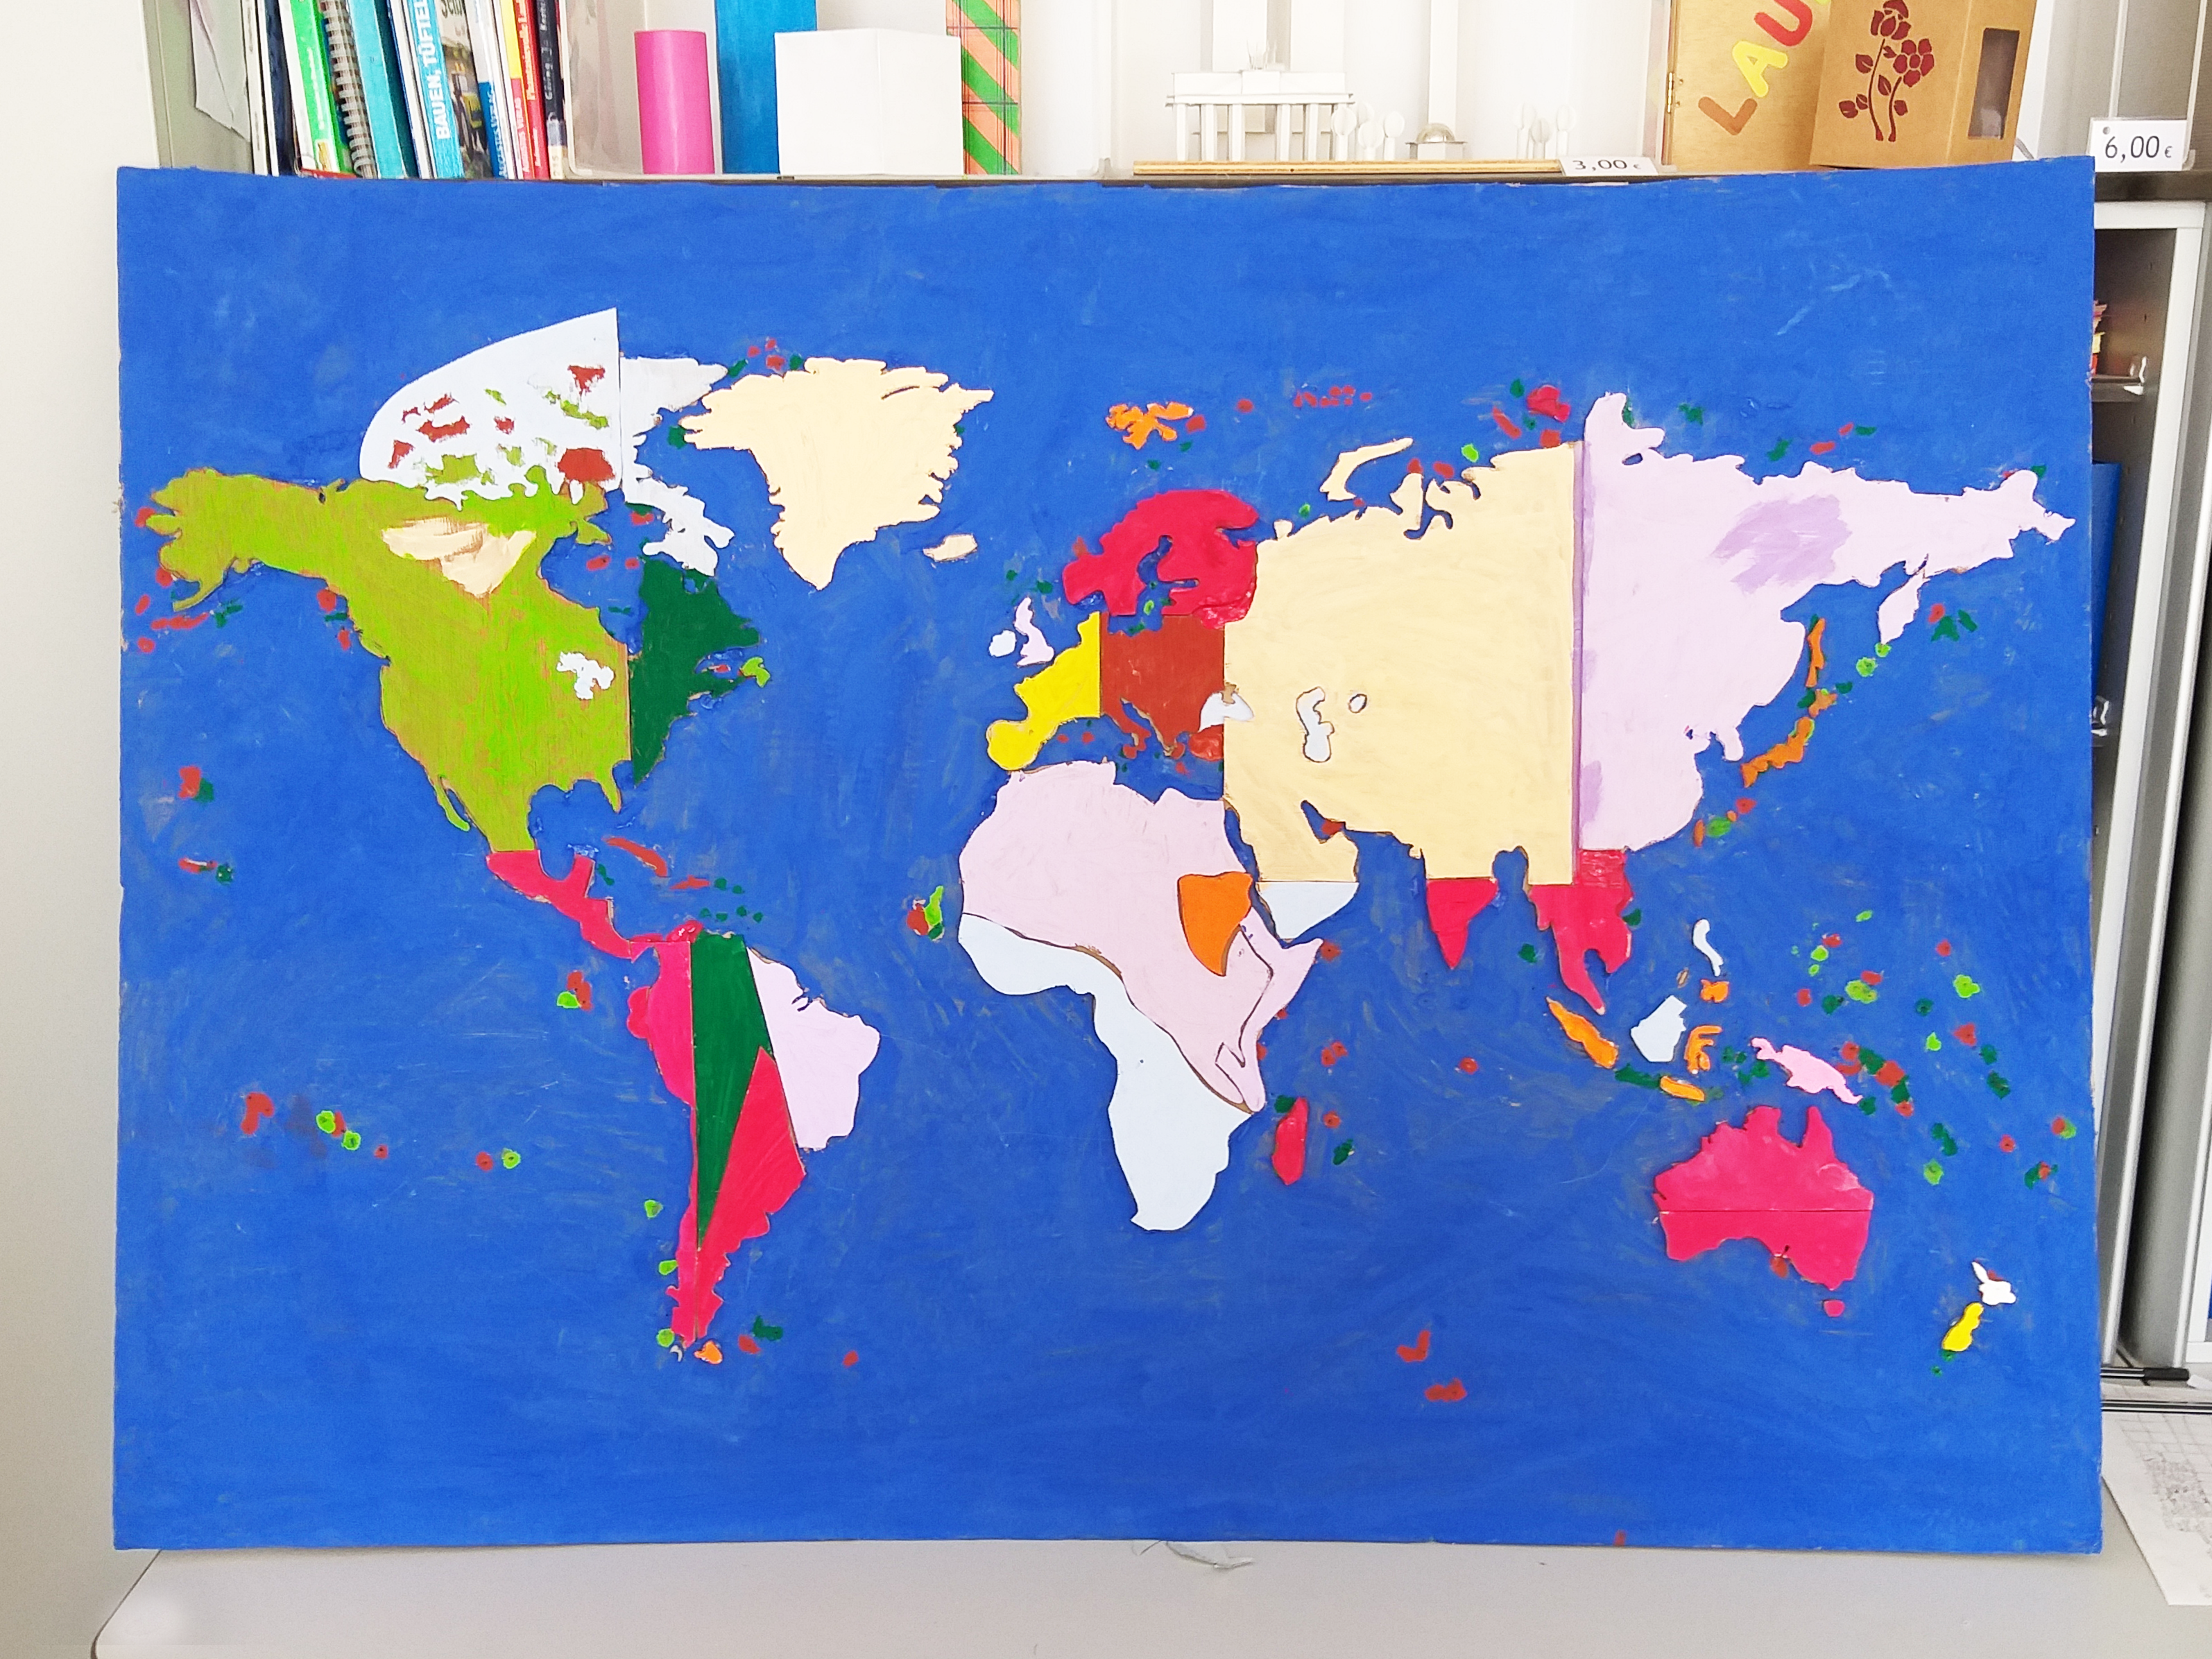 Farbig gestaltete Weltkarte